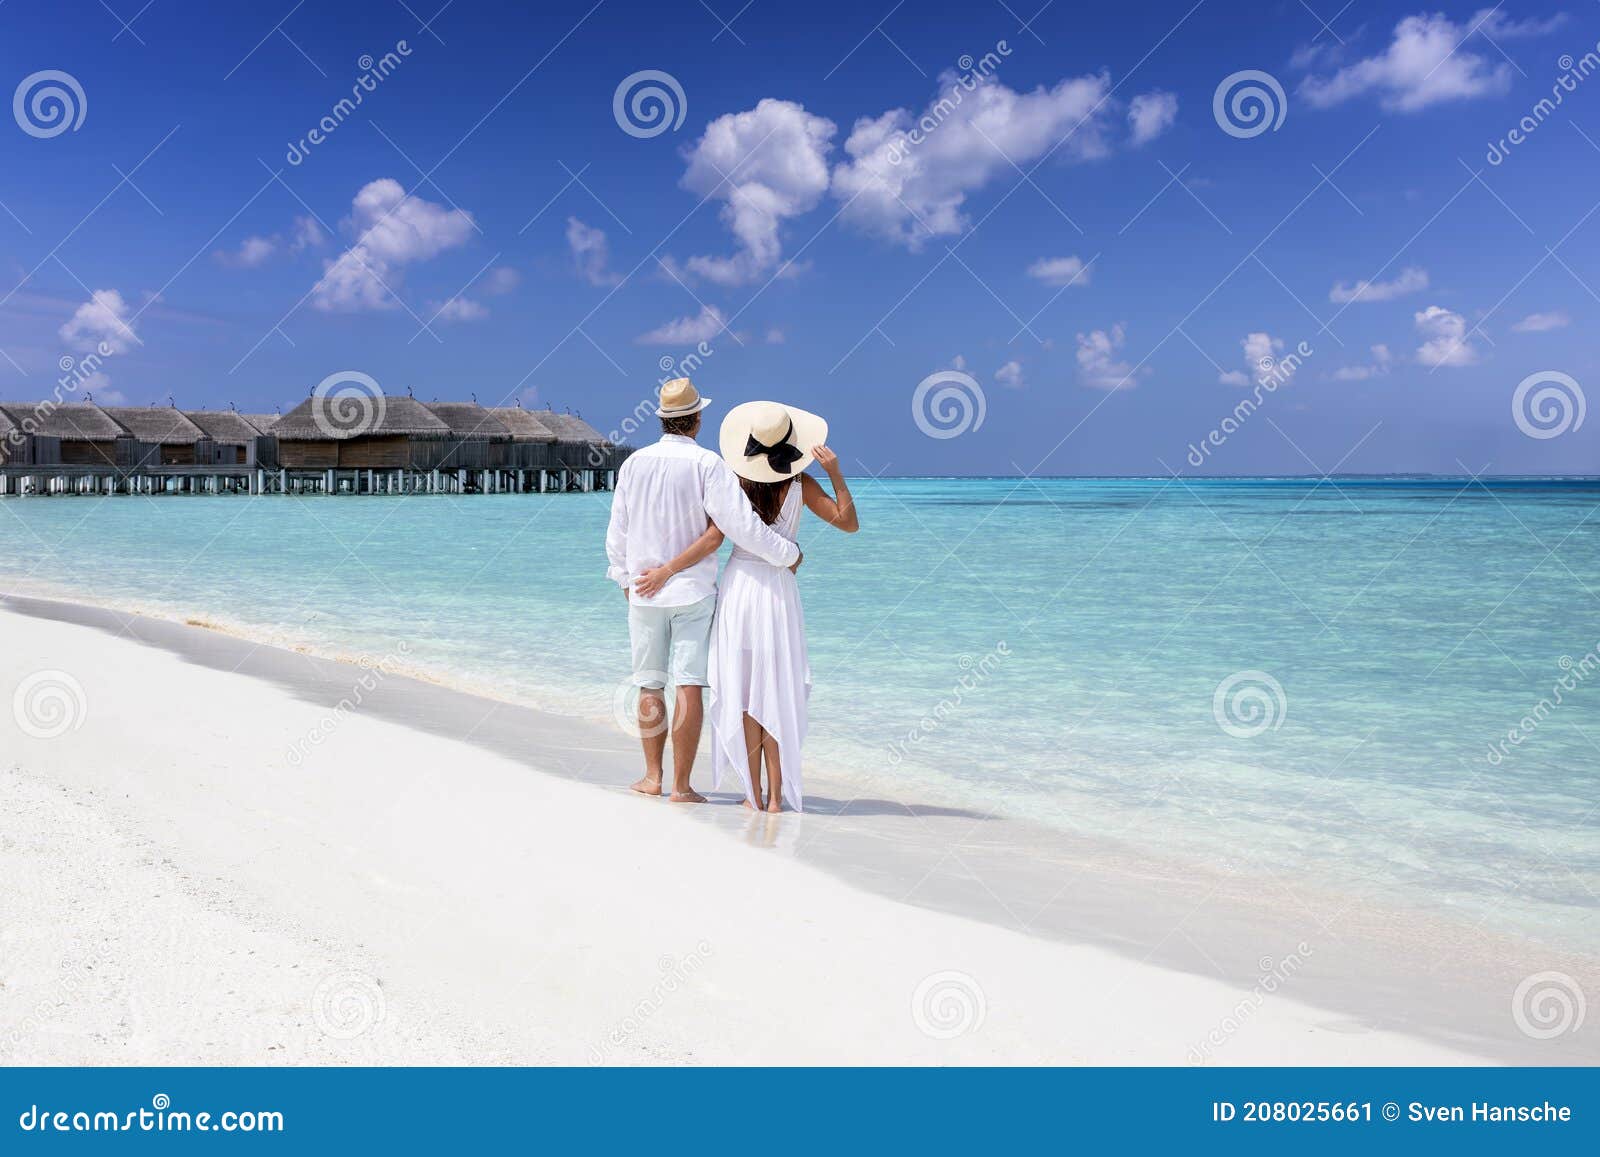 Una Pareja Con Ropa Blanca De Verano Se Alza En Una Playa Tropical Imagen  de archivo - Imagen de descalzo, cubo: 208025661